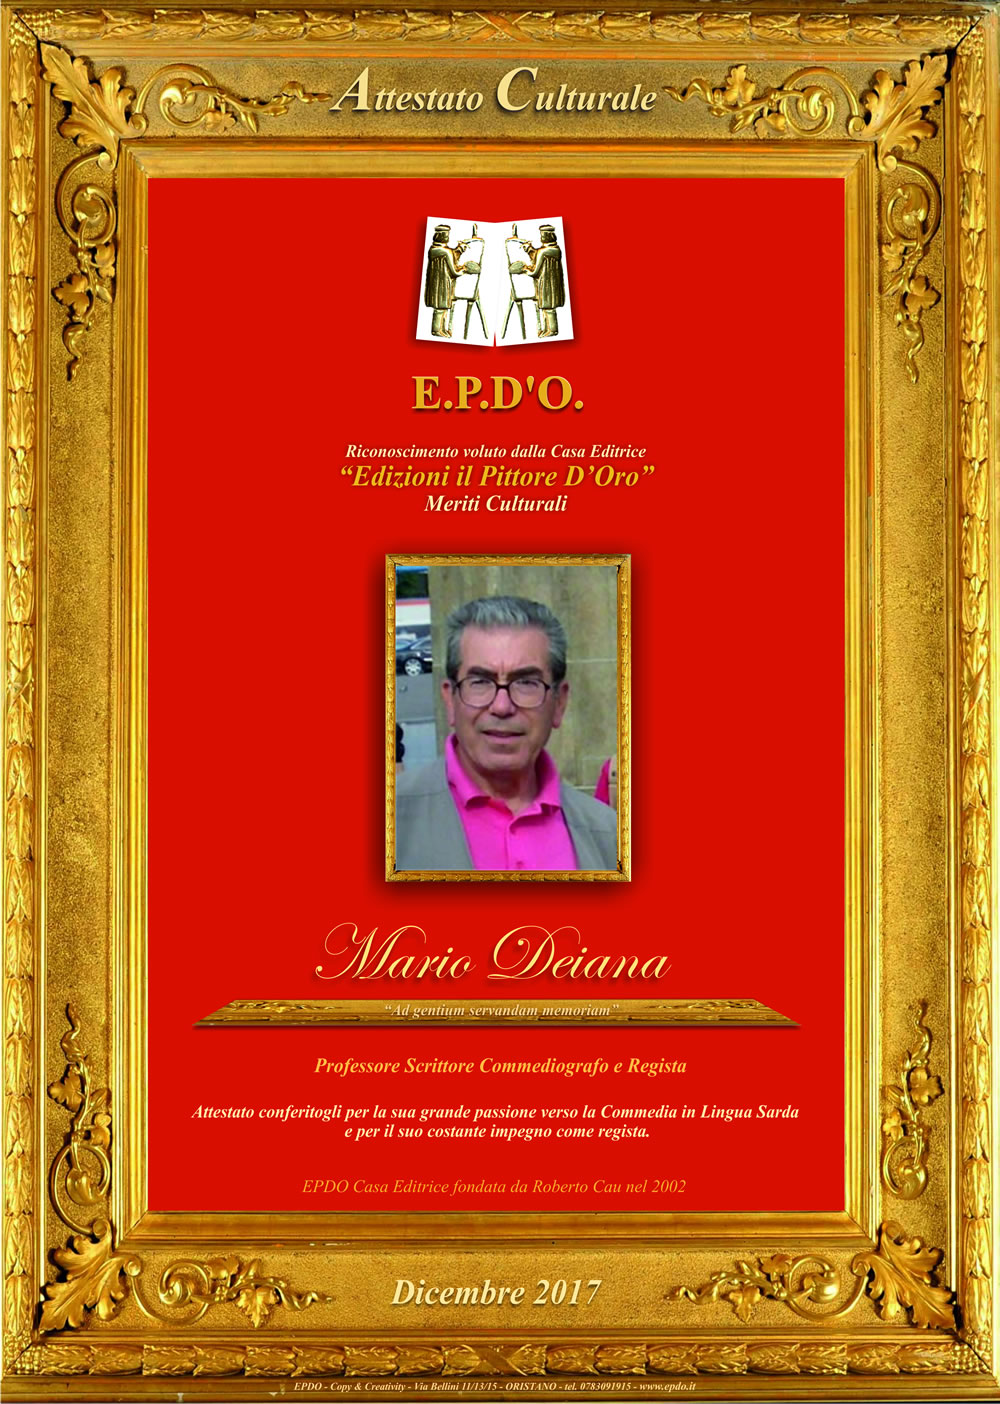 EPDO - Attestato Culturale Mario Deiana